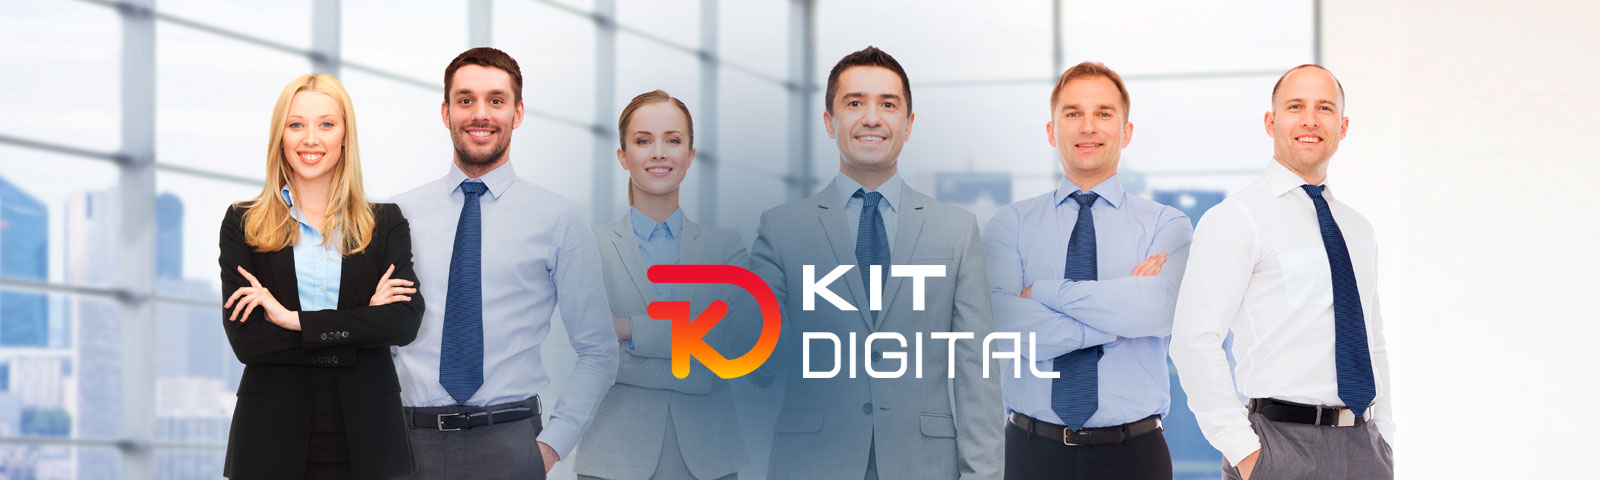 Kit Digital ampliado a empresas de más de 50 trabajadores